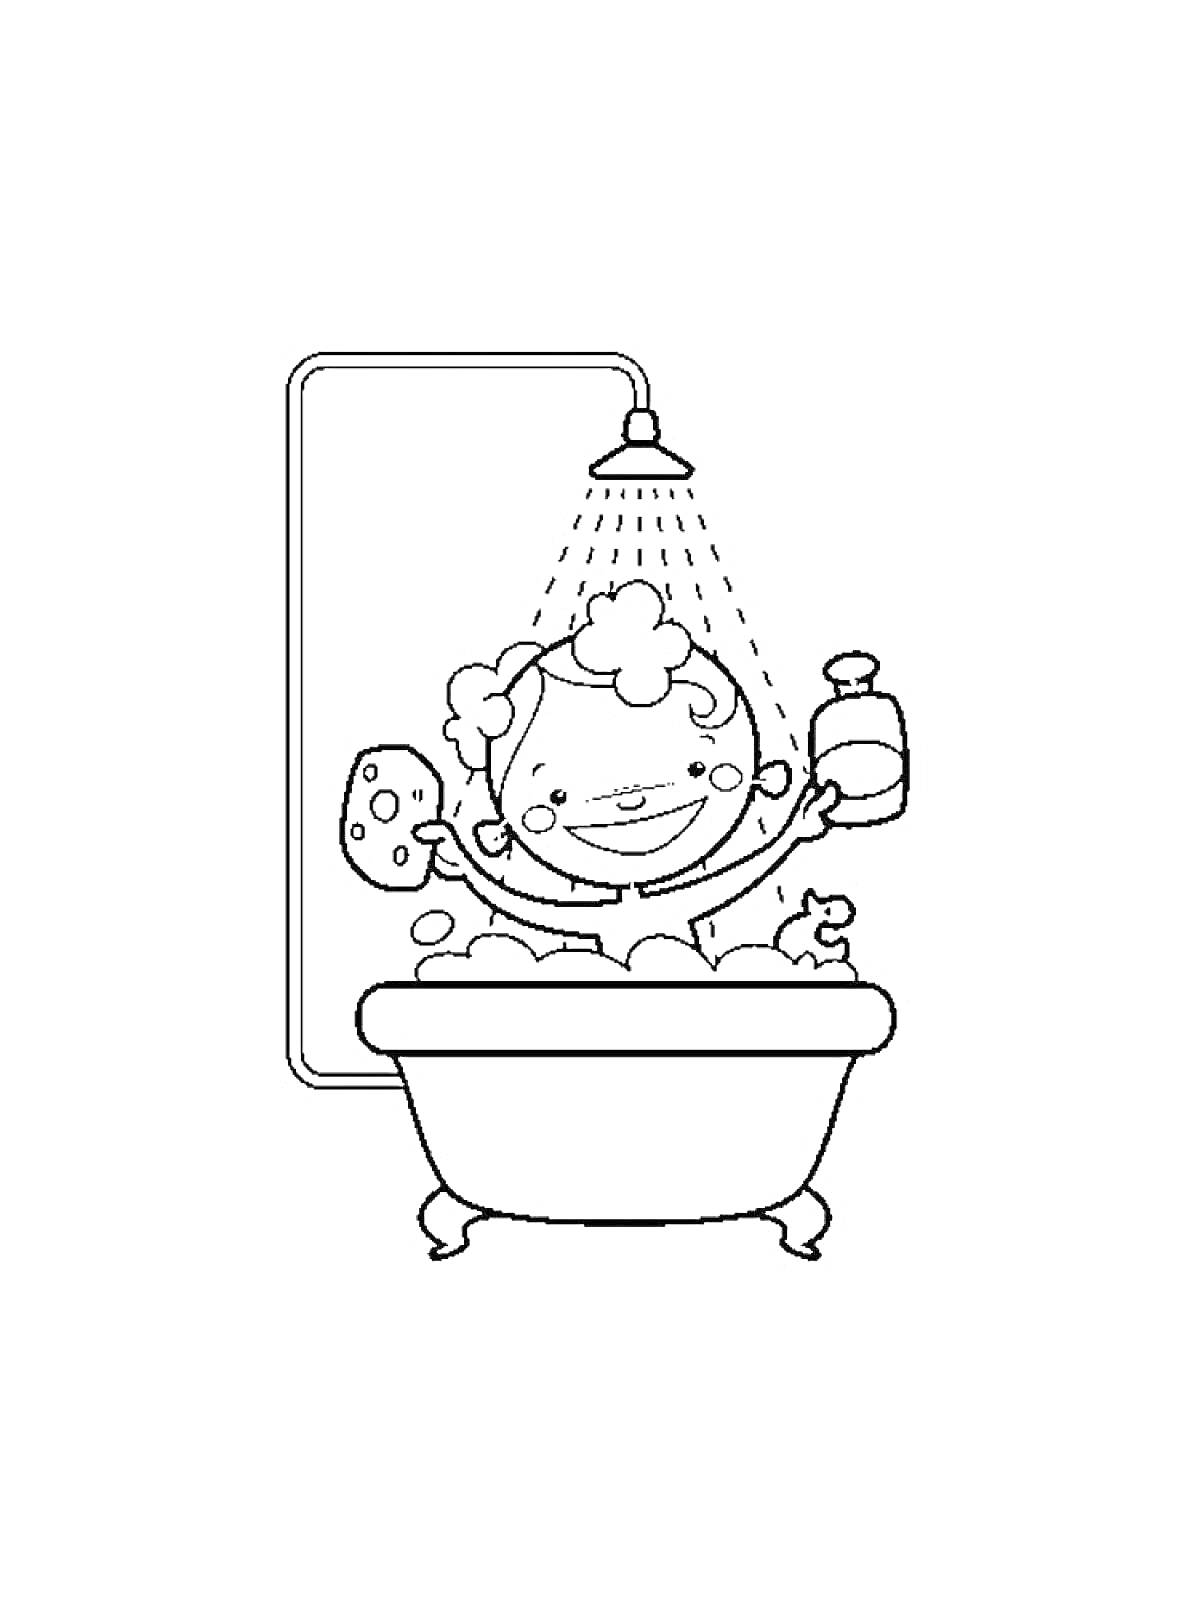 Раскраска Ребенок в ванне с губкой, мылом и уткой под душем